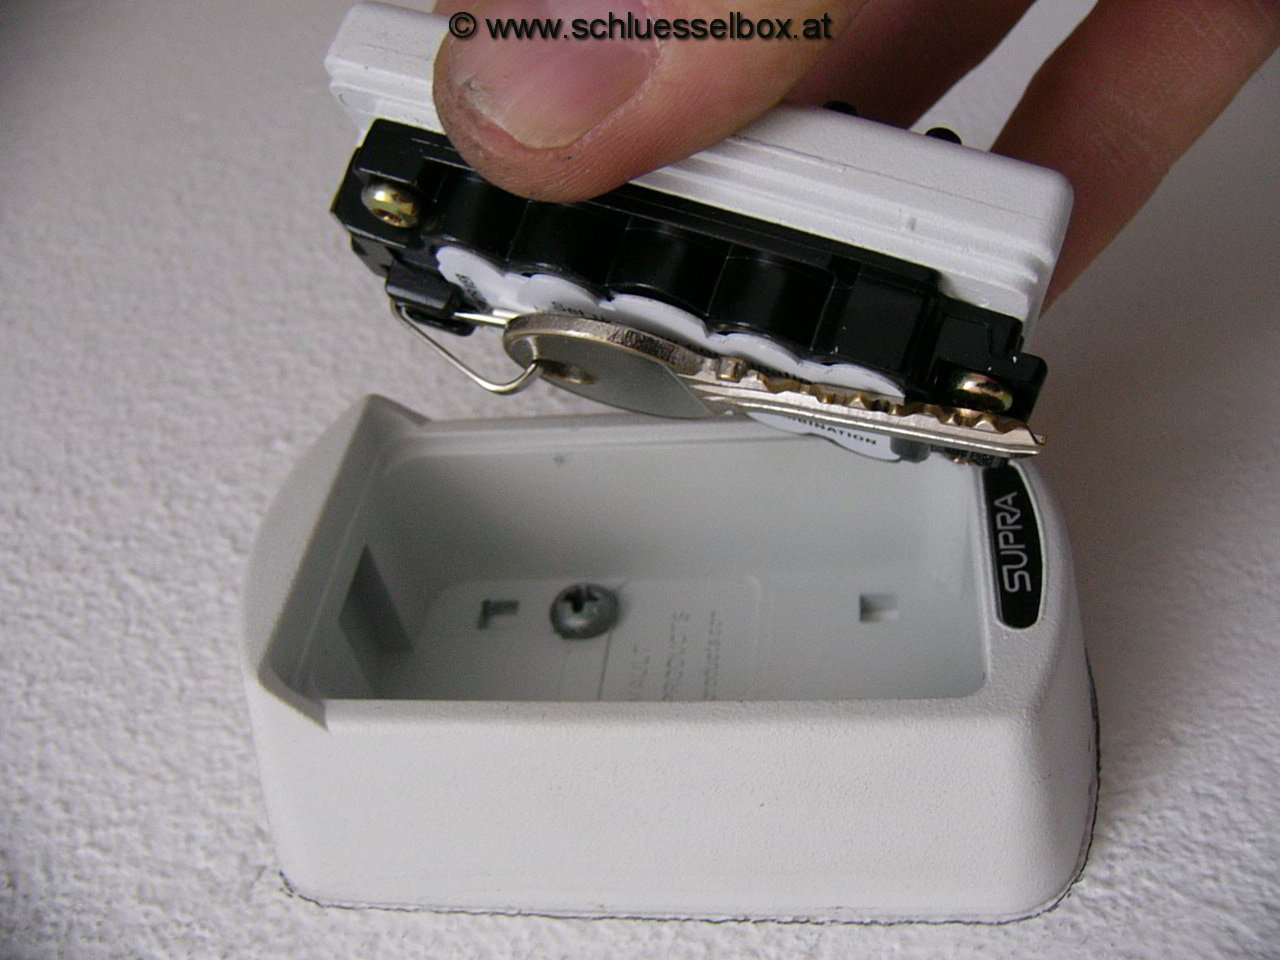 Supra KeySafe S6 Pro Slimline Schlüsselsafe 2 Keys Weiss